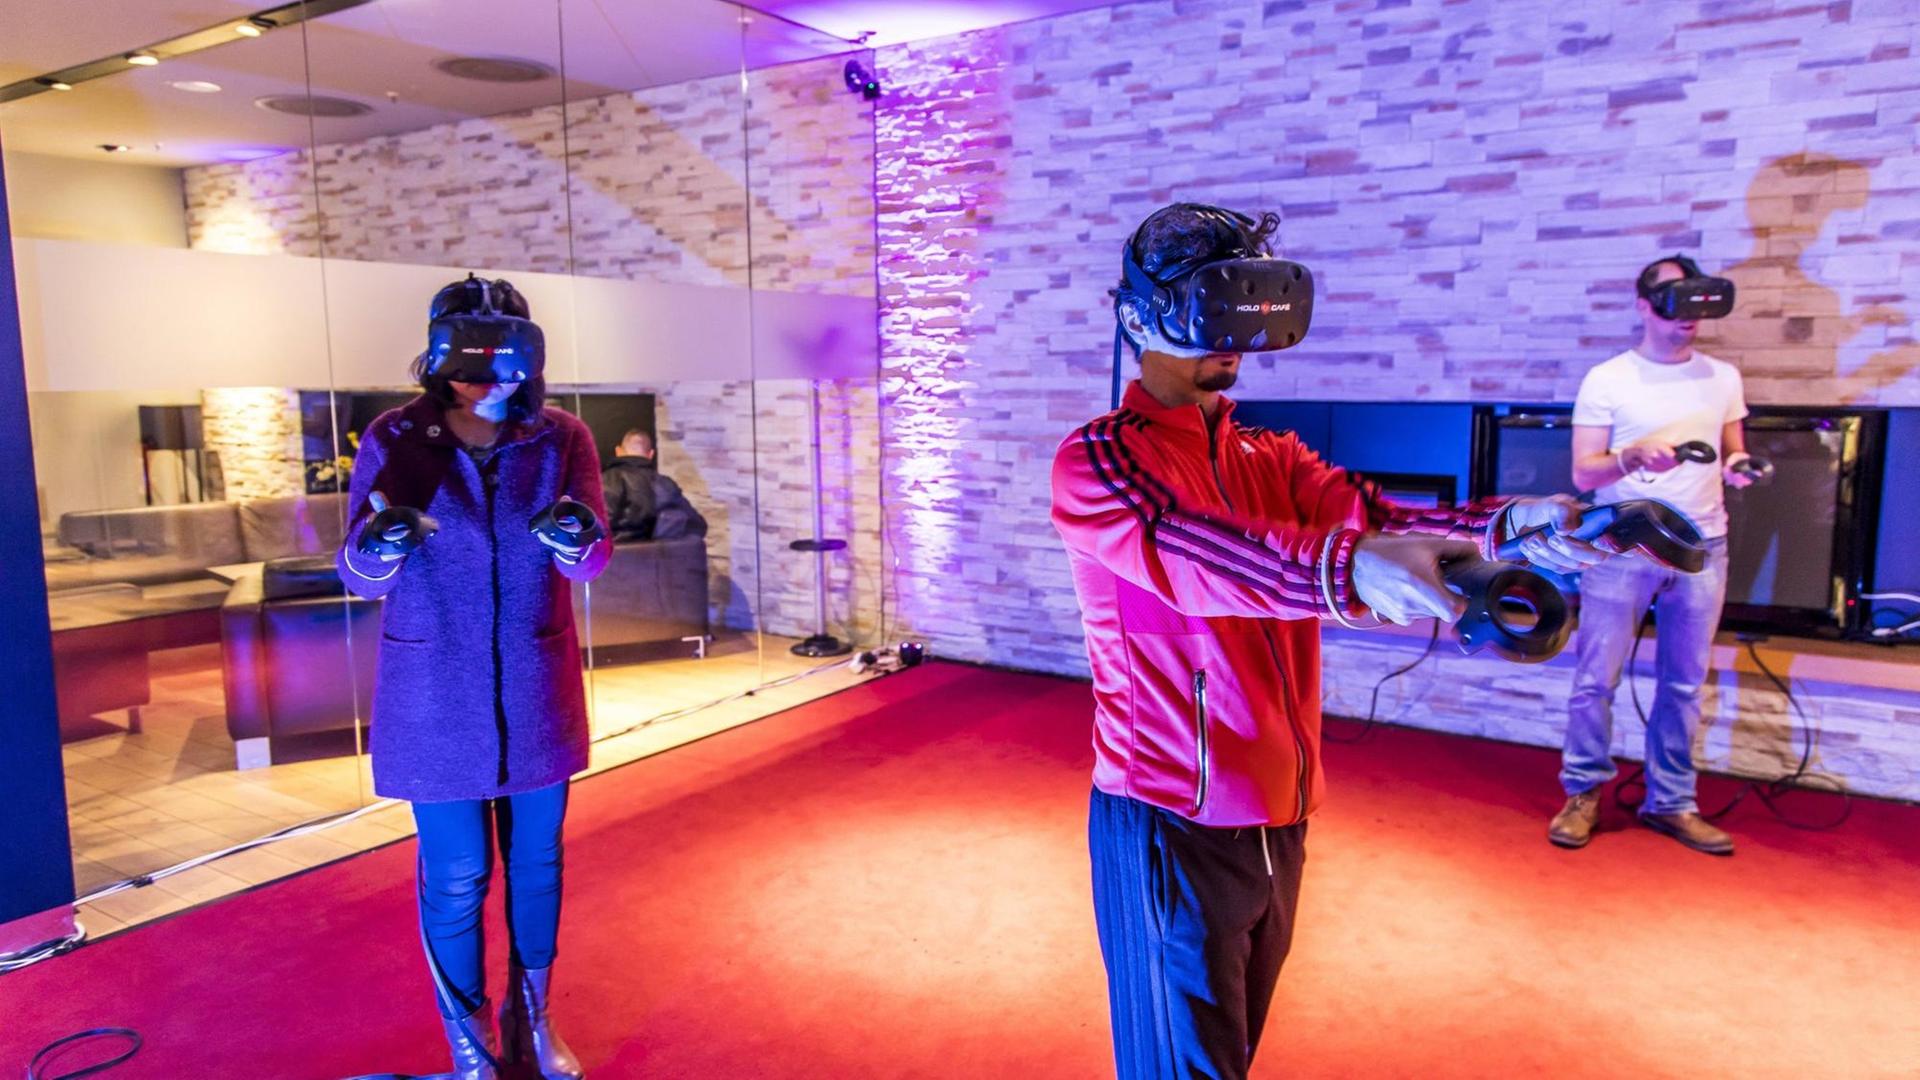 Mithilfe von VR-Brillen können Spieler gemeinsam in virtuelle Spielwelten eintauchen. Zu sehen sind Spieler im HoloCafe Düsseldorf, einer Art Spielhalle für Virtual Reality Spiele, in dem bis zu 4 Spieler mit- oder gegeneinander spielen können.